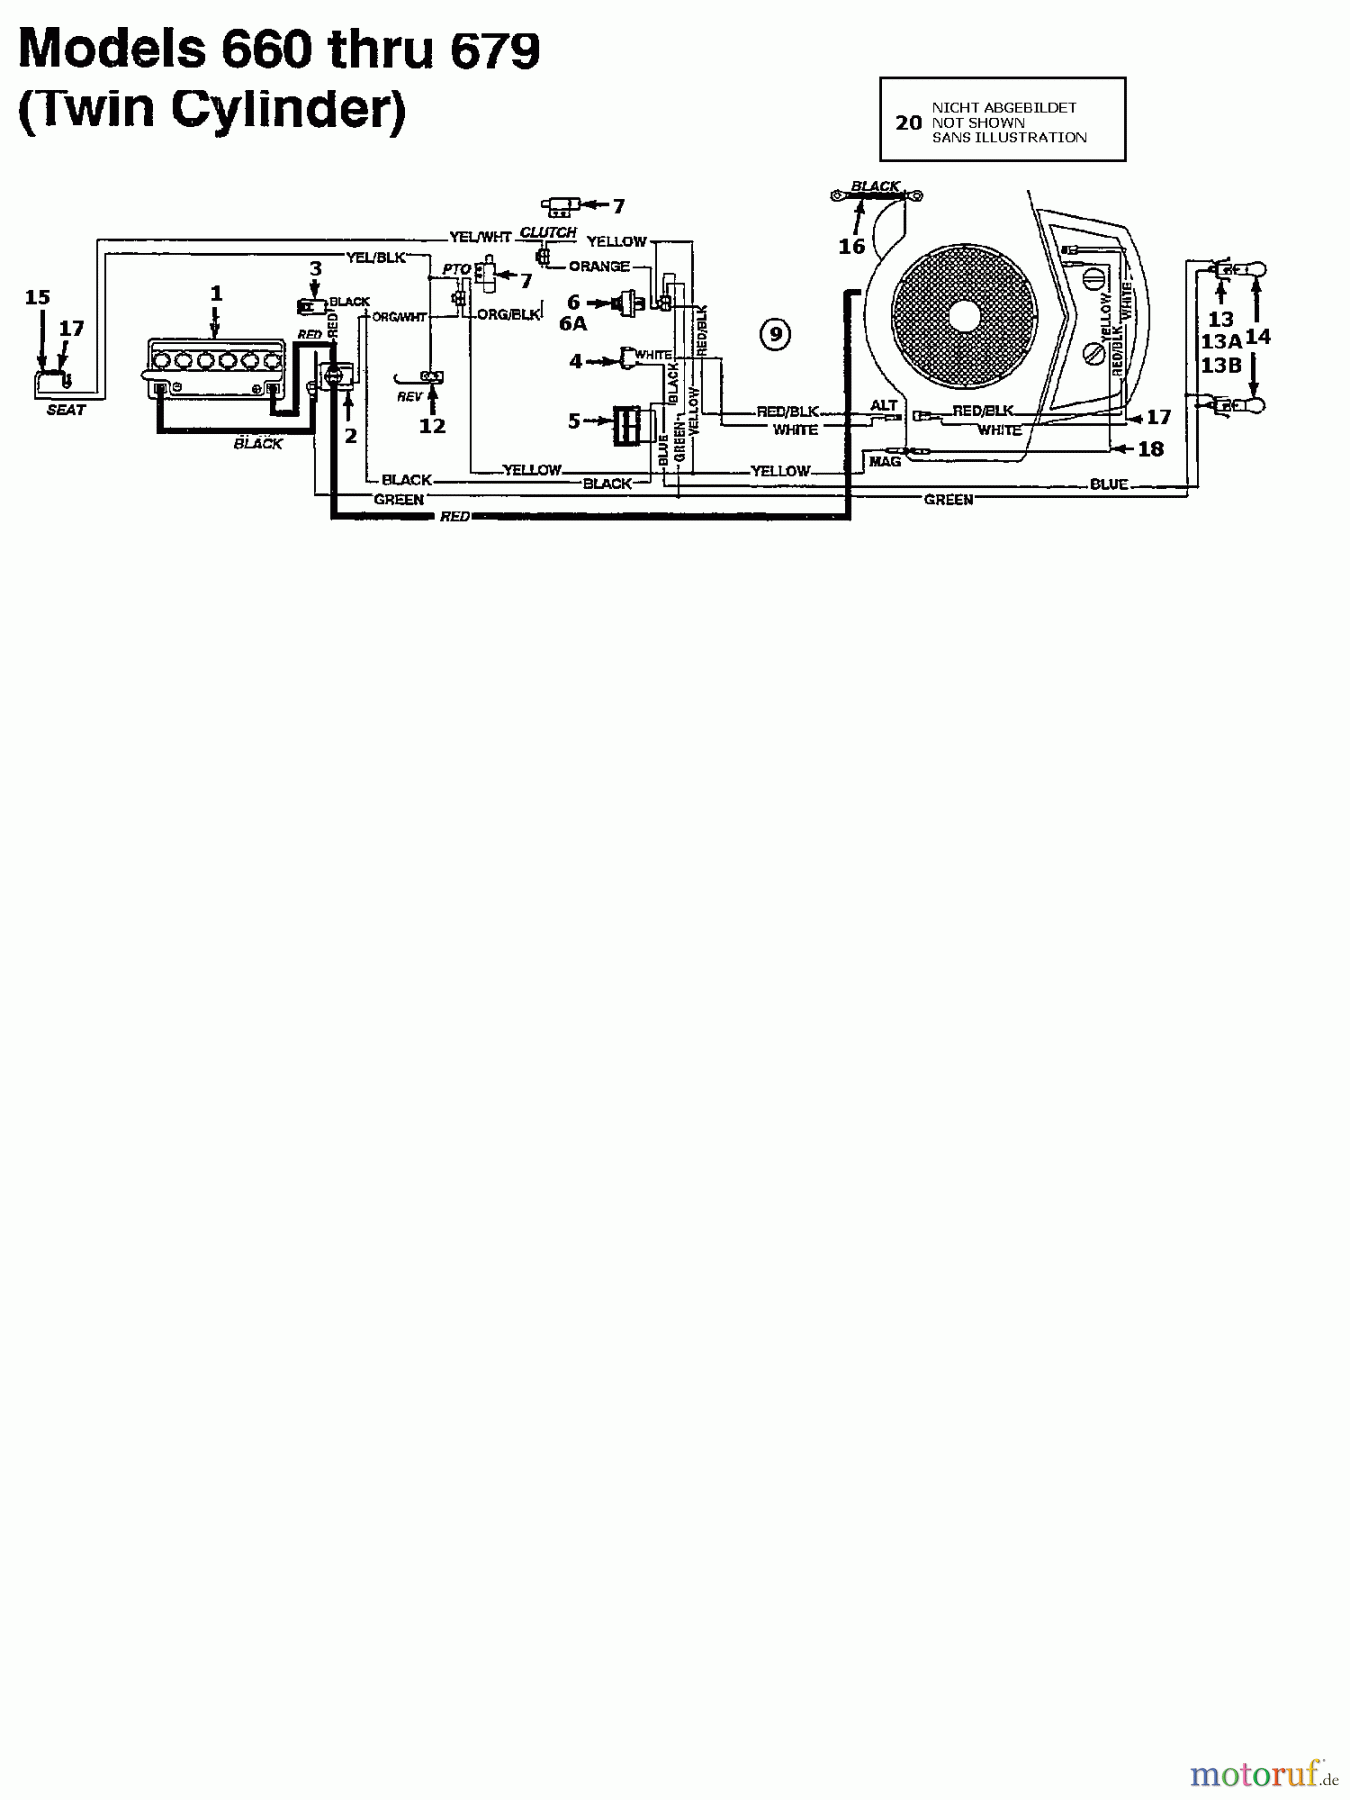  Agria Rasentraktoren 4600/96 134K679F609  (1994) Schaltplan 2 Zylinder